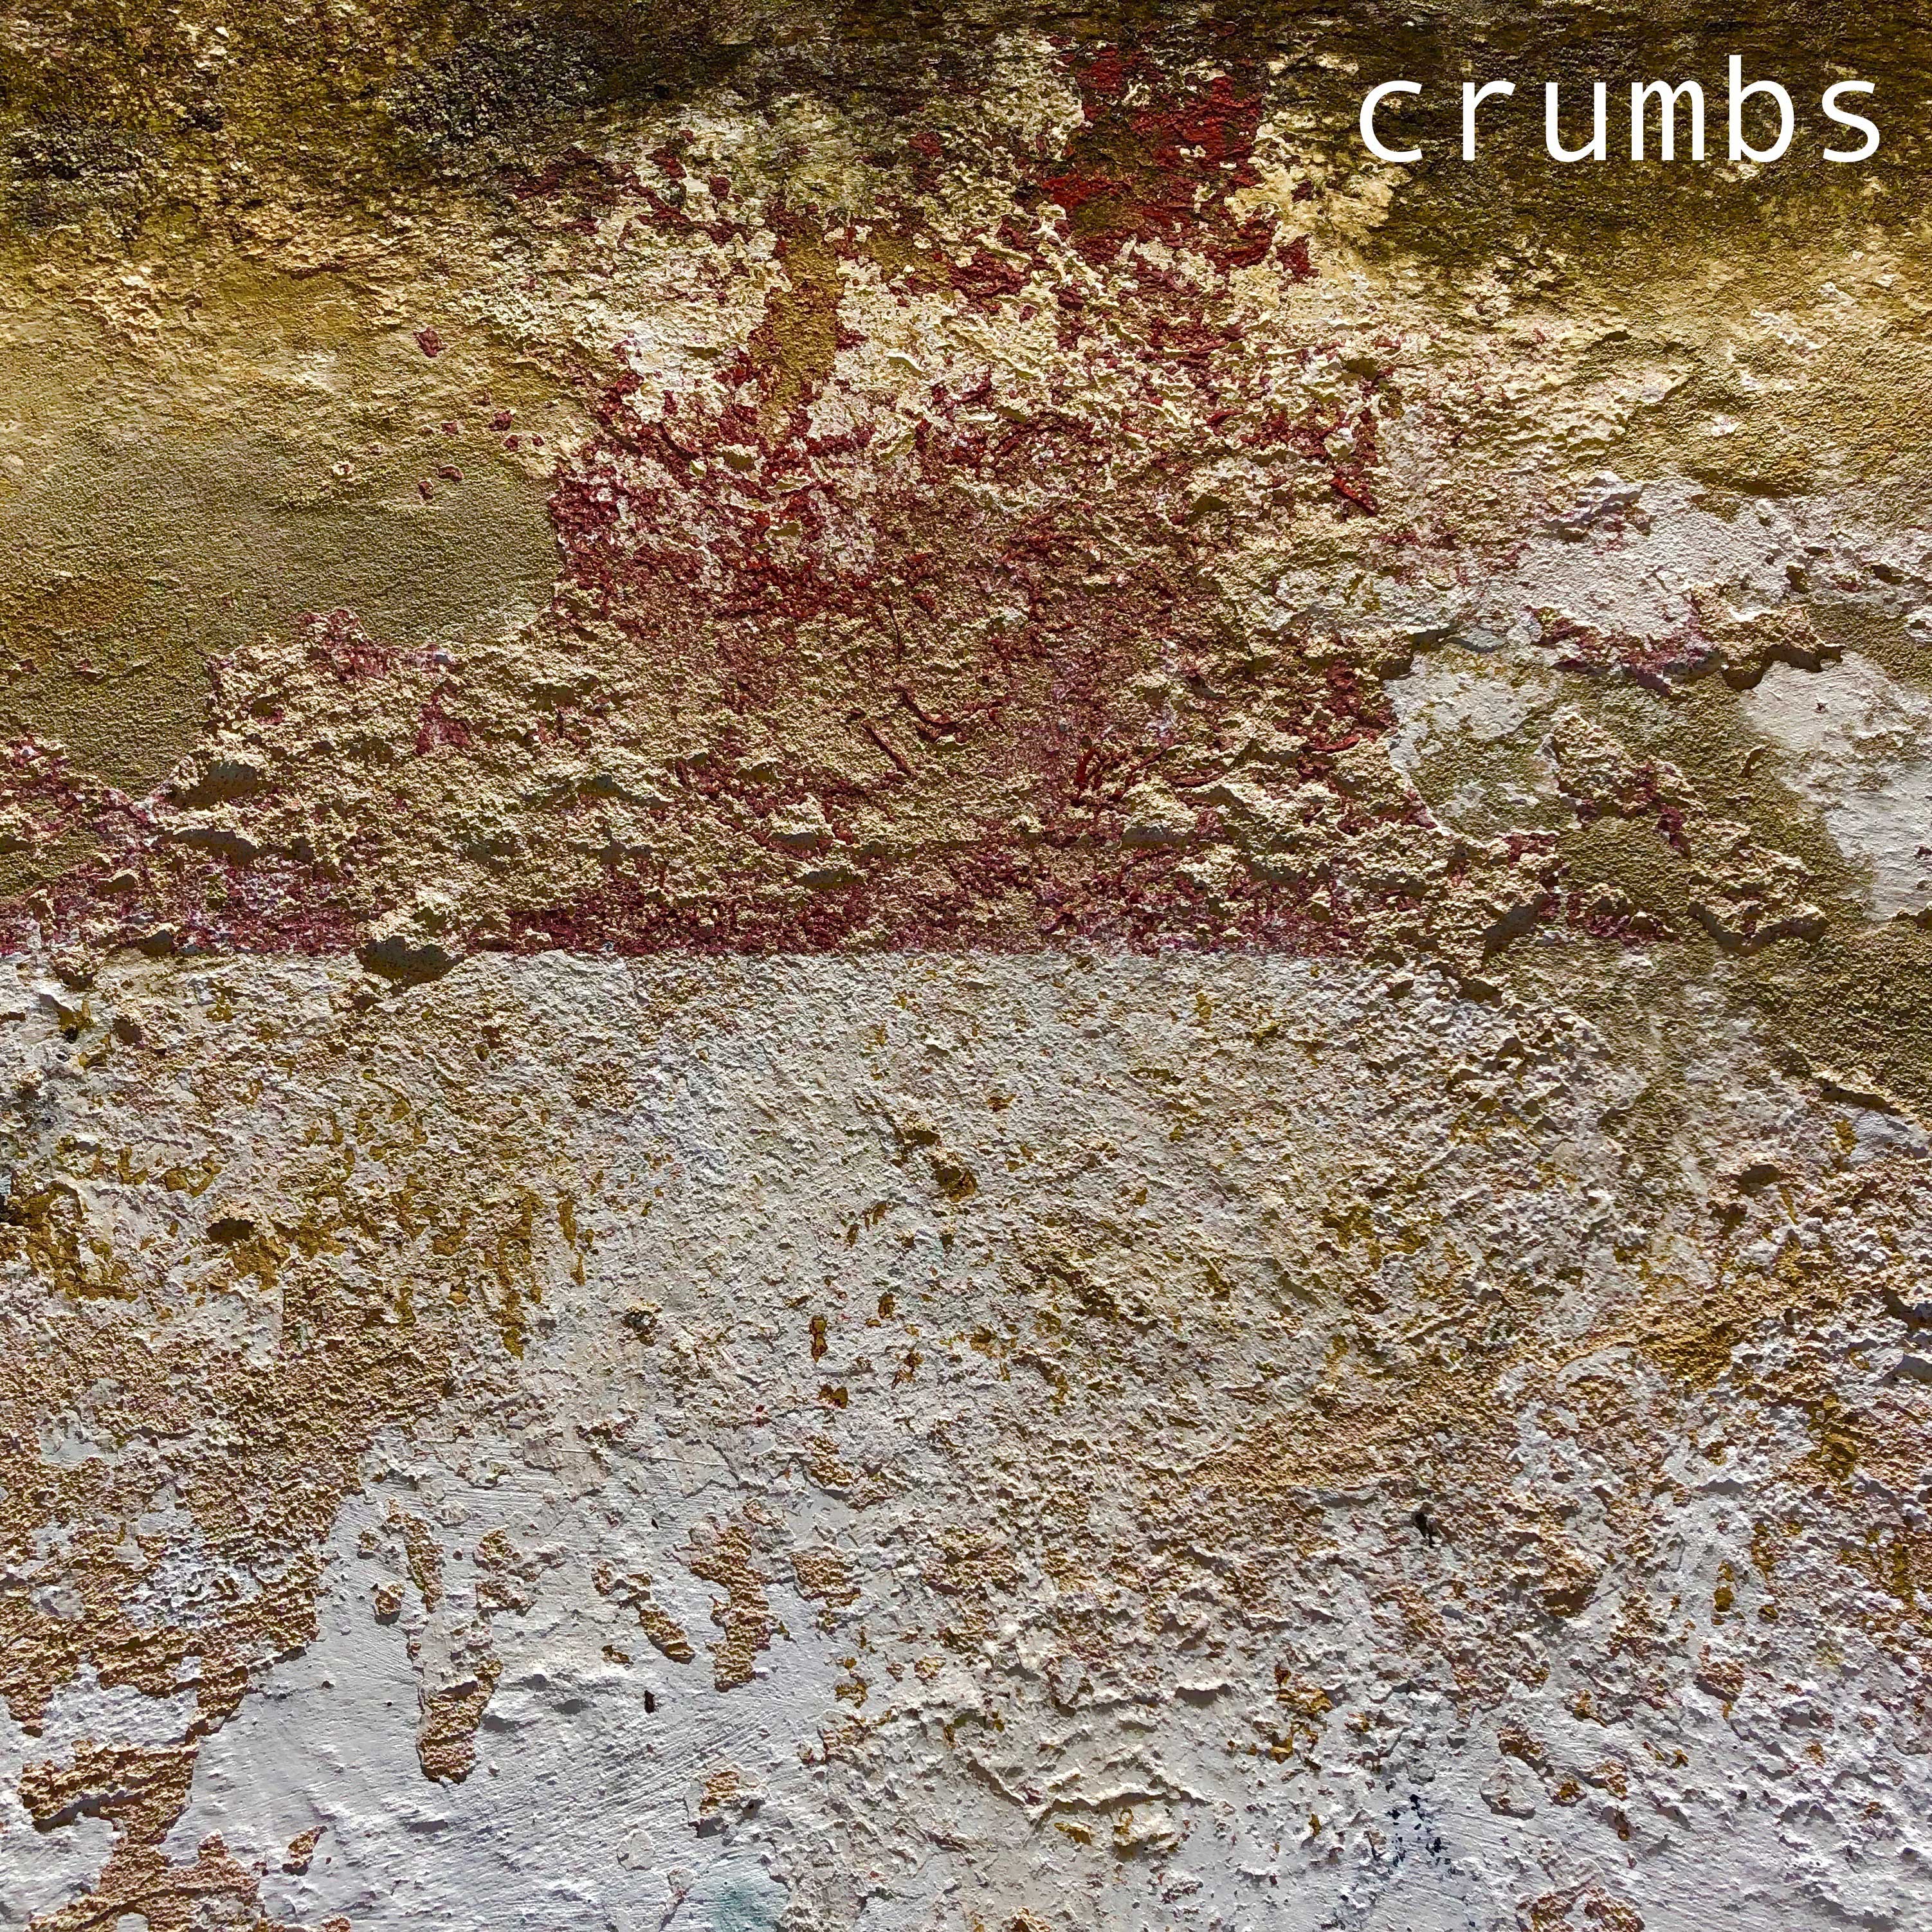 crumbs